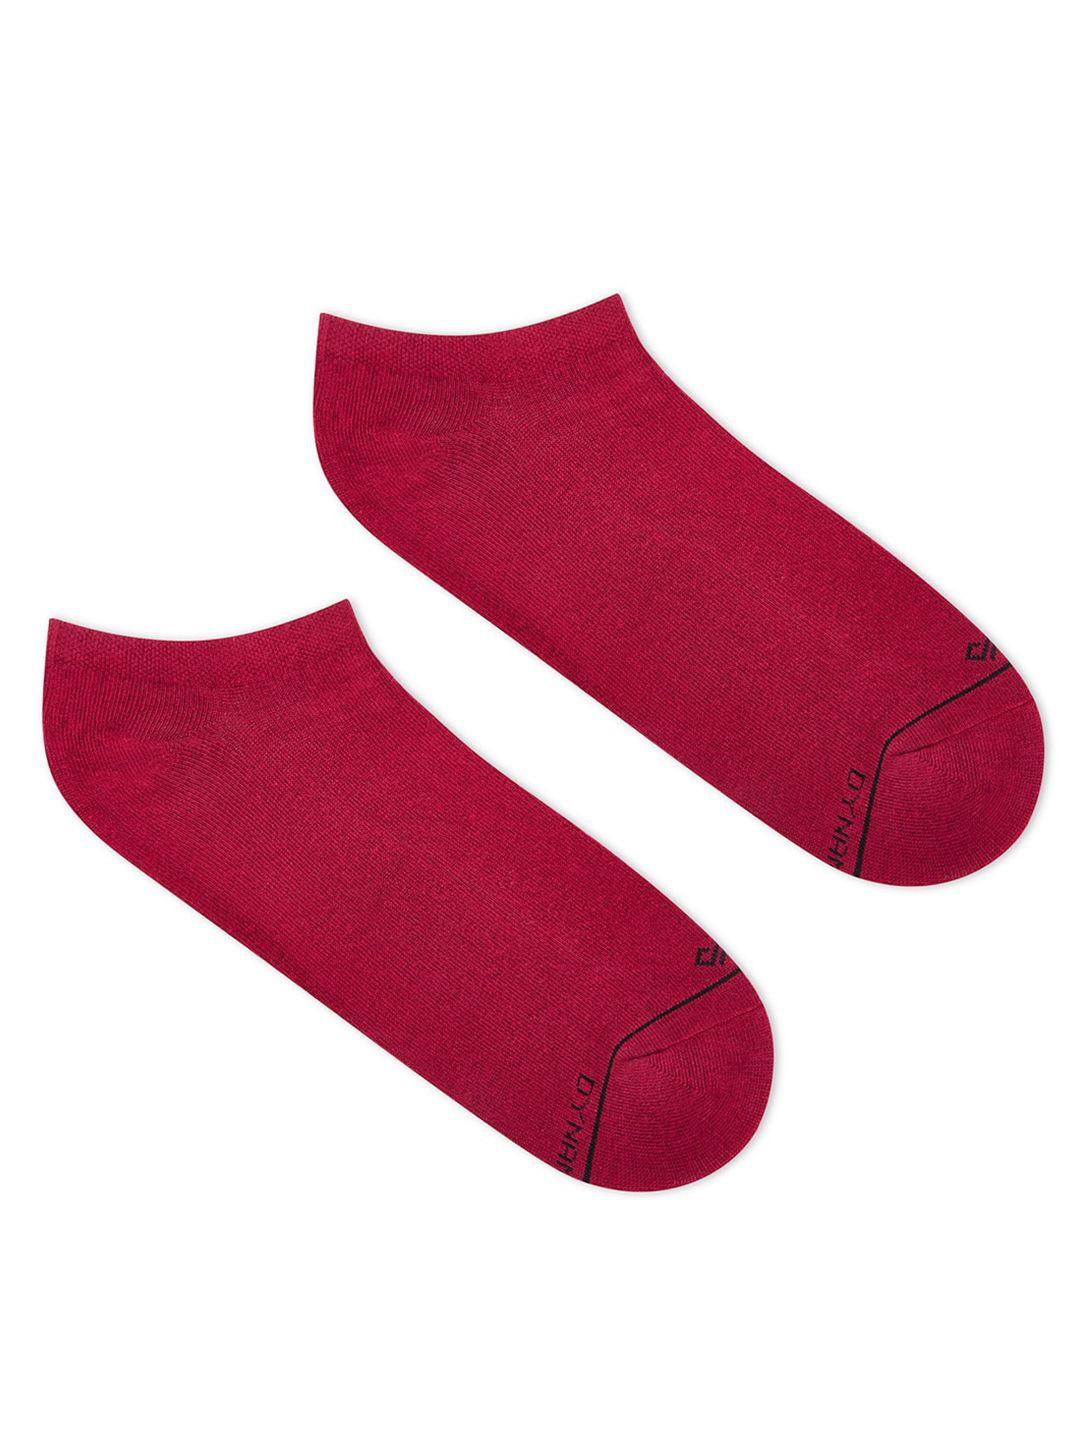 dynamocks ankle length regular socks